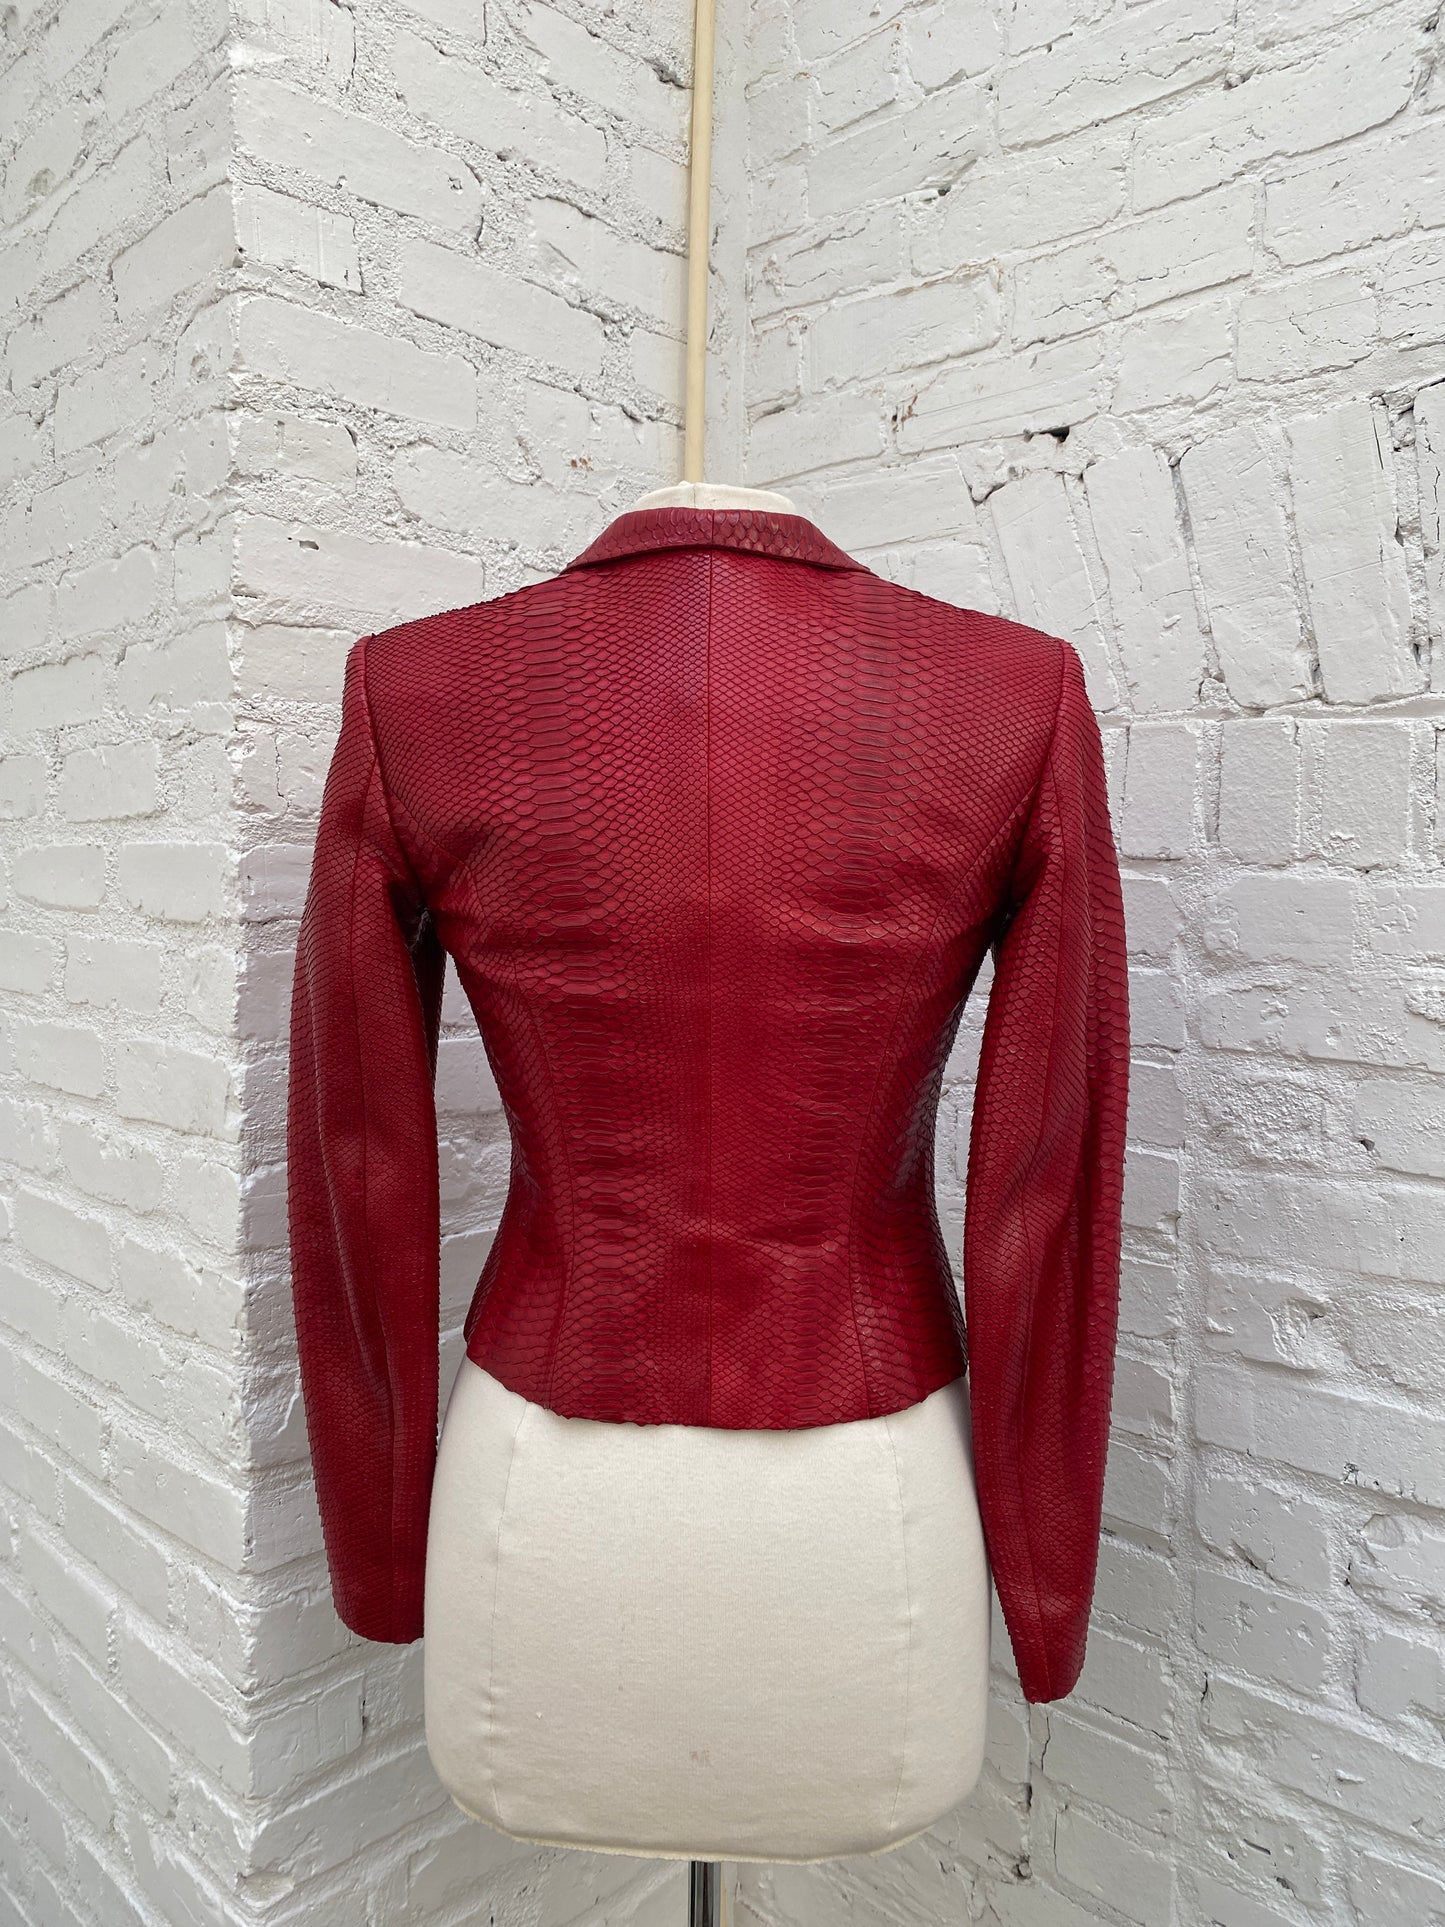 Salvatore Ferragamo Red Python Leather Jacket, 6